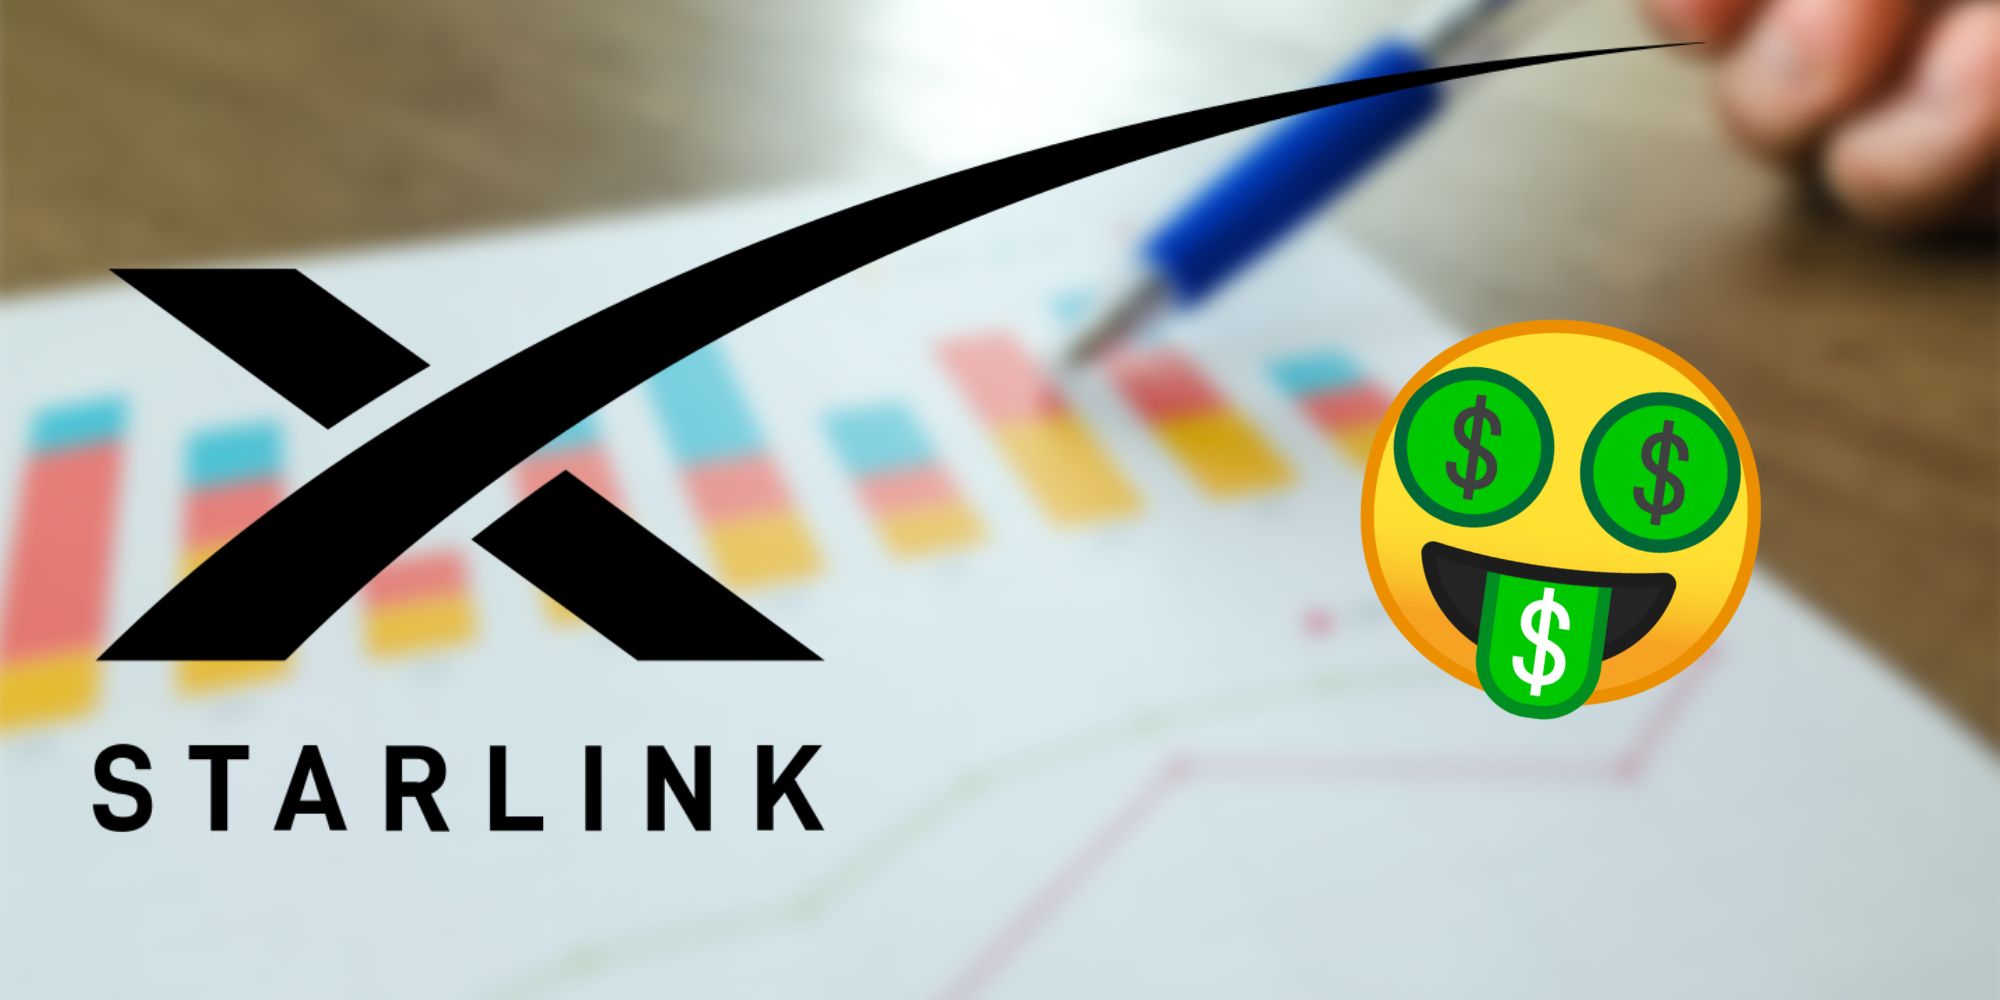 Starlink logo next to money eye emoji